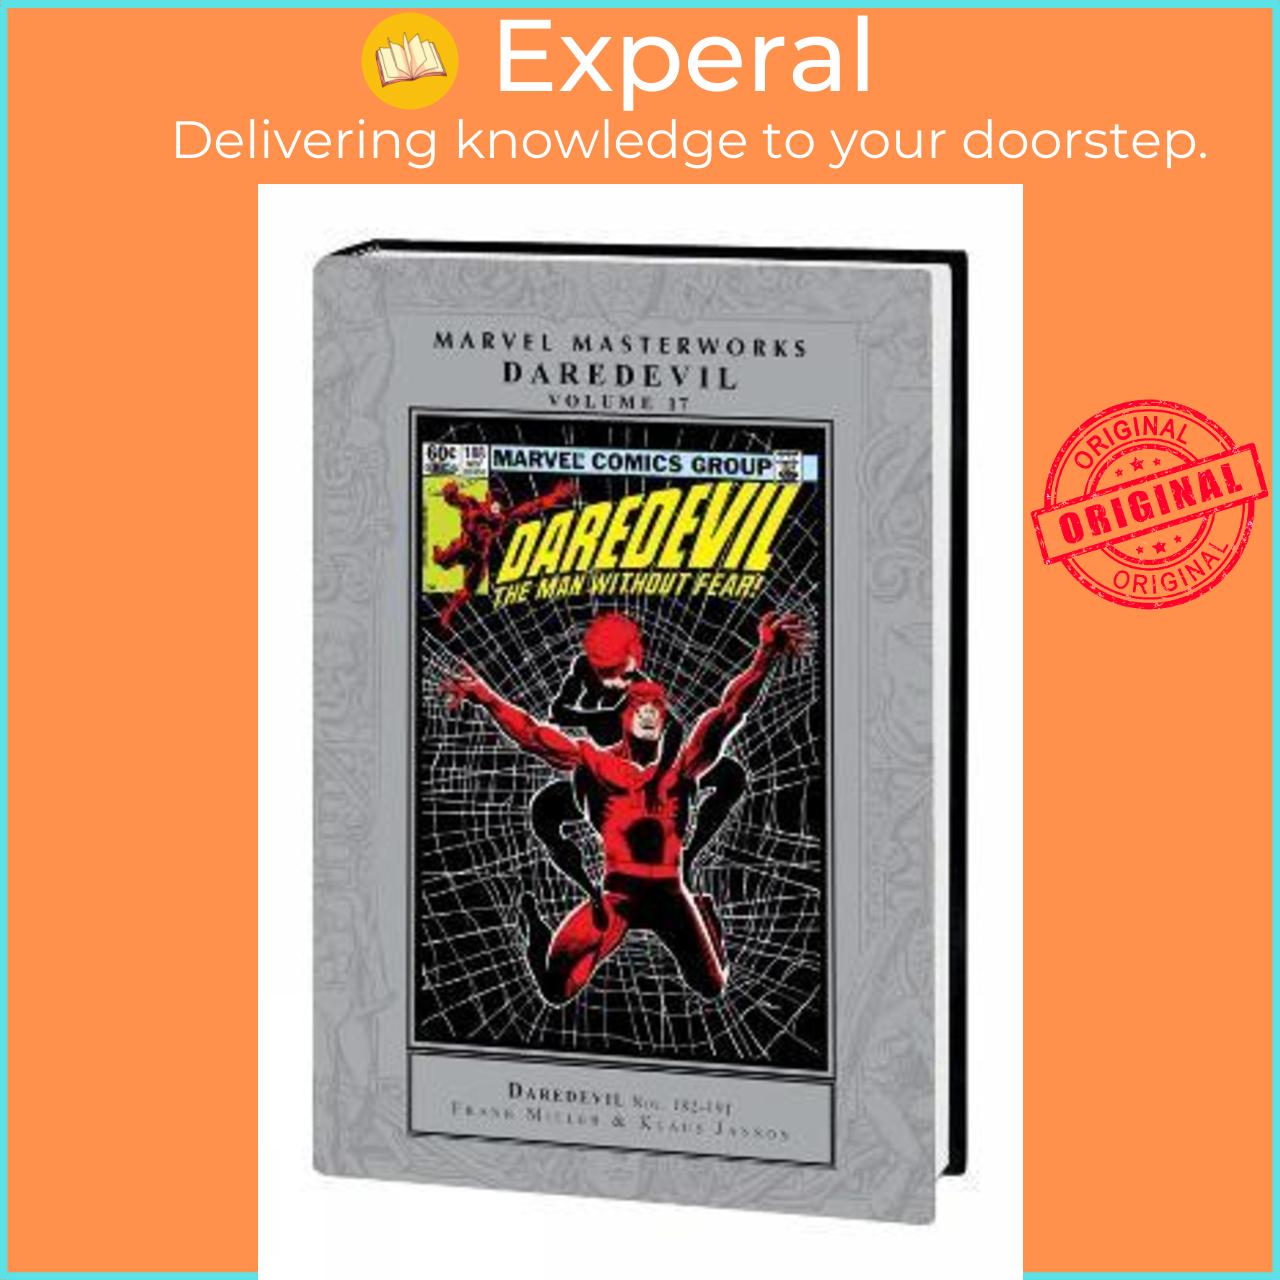 Sách - Marvel Masterworks: Daredevil Vol. 17 by Frank Miller (US edition, hardcover)